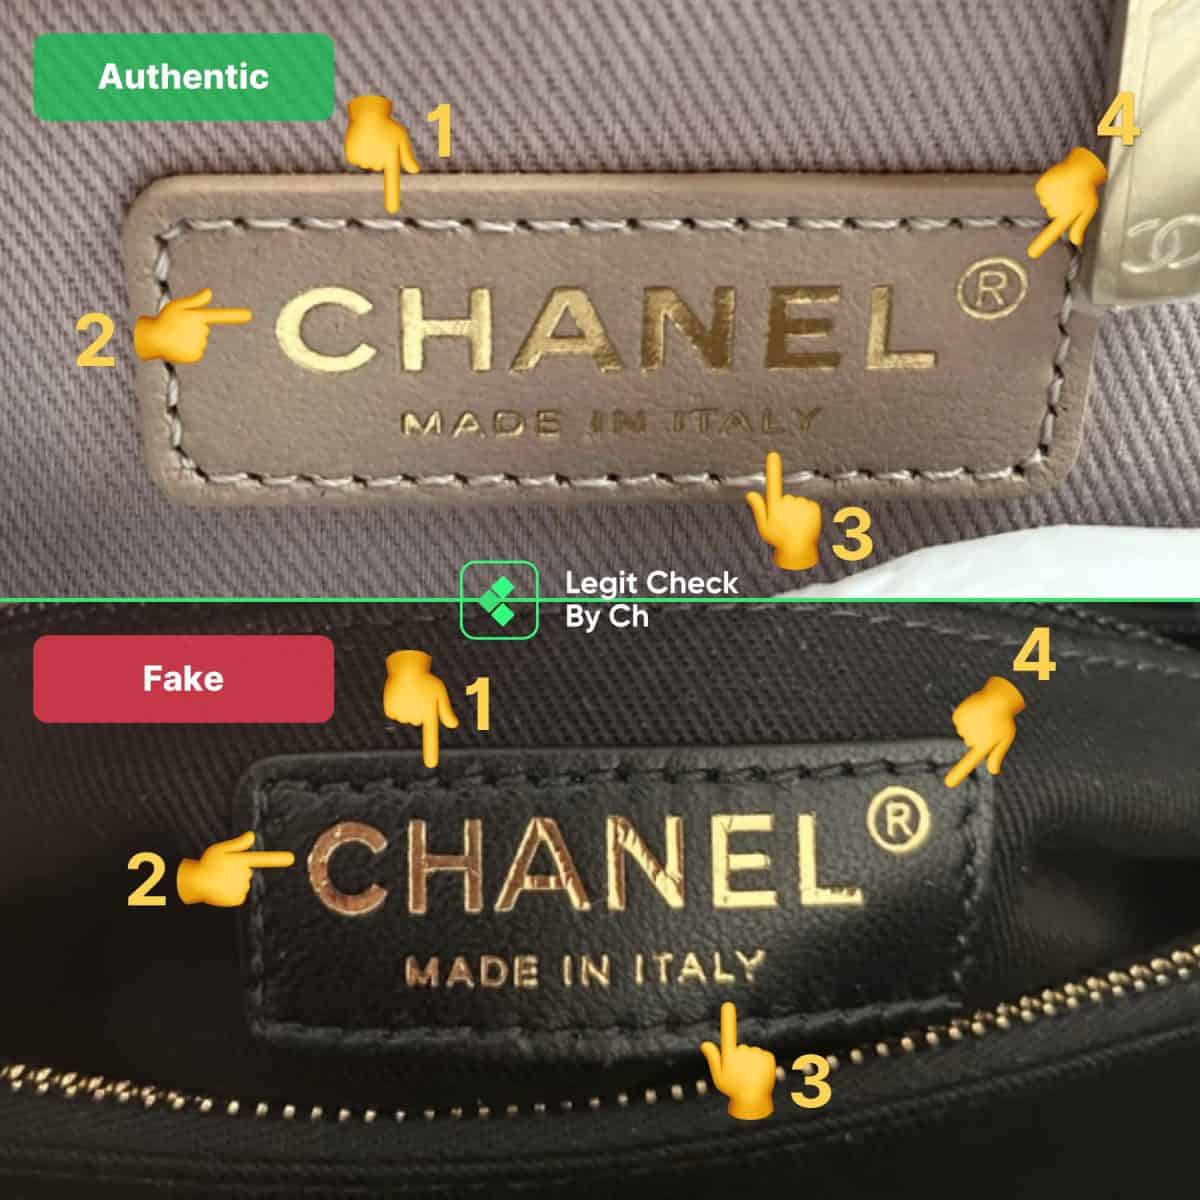 coco chanel handbag authentic